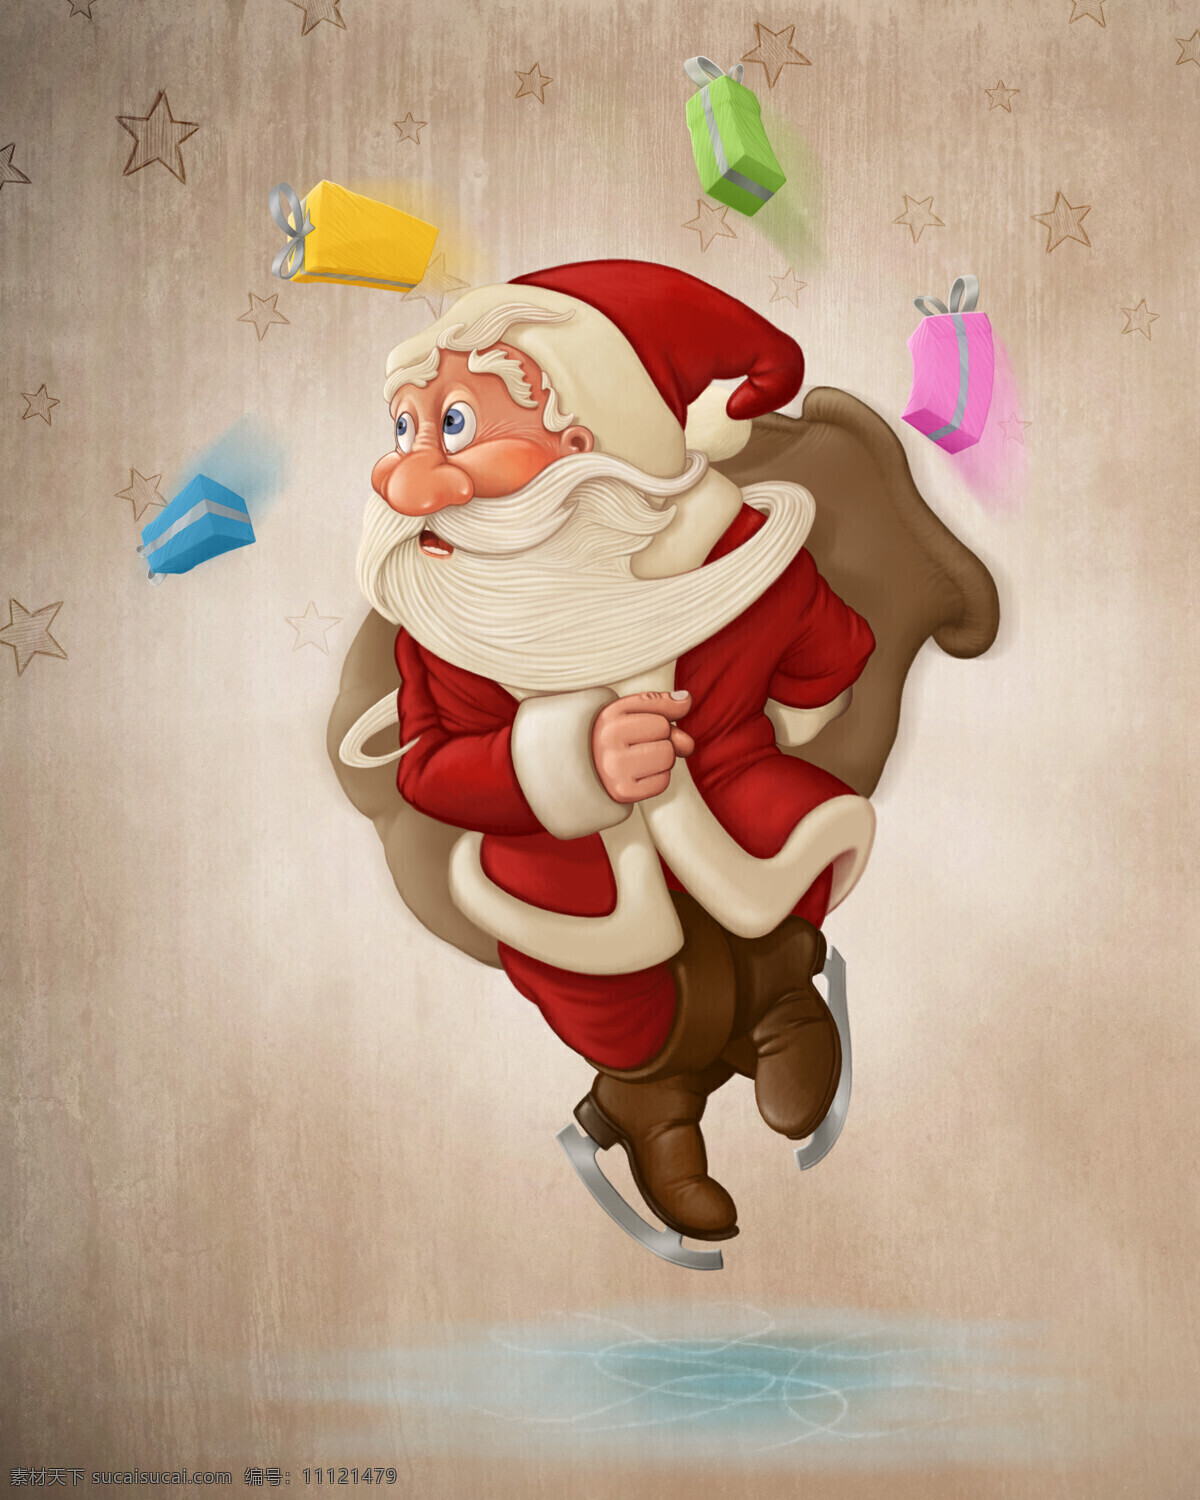 可爱 圣诞老人 卡通画 礼物盒 溜冰鞋 圣诞节 节日素材 节日庆典 生活百科